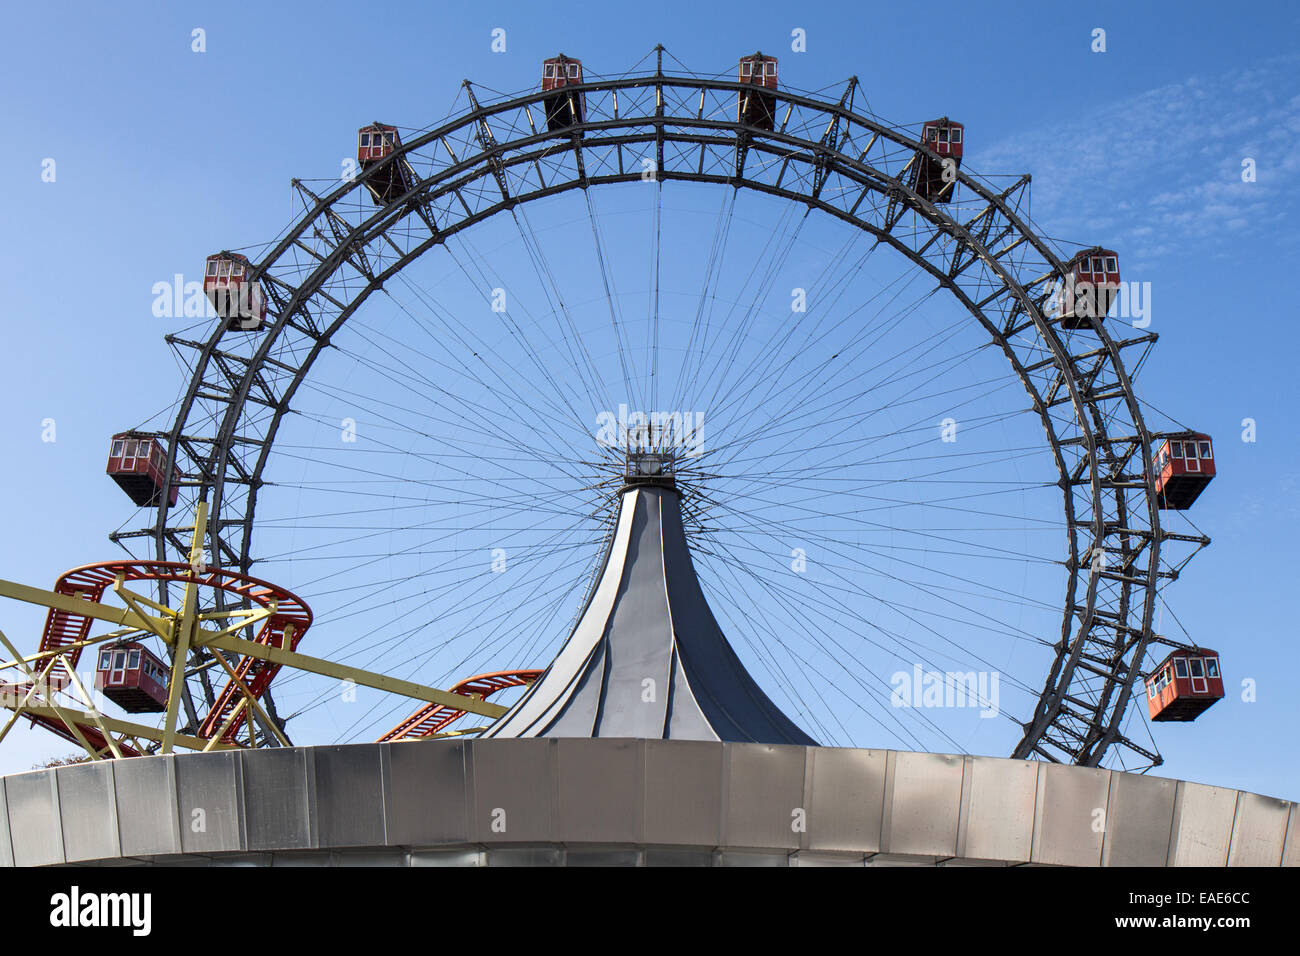 Austria: Viennese ruota panoramica Ferris all'entrata del parco di divertimenti Prater di Vienna. Foto da 1. Novembre 2014. Foto Stock